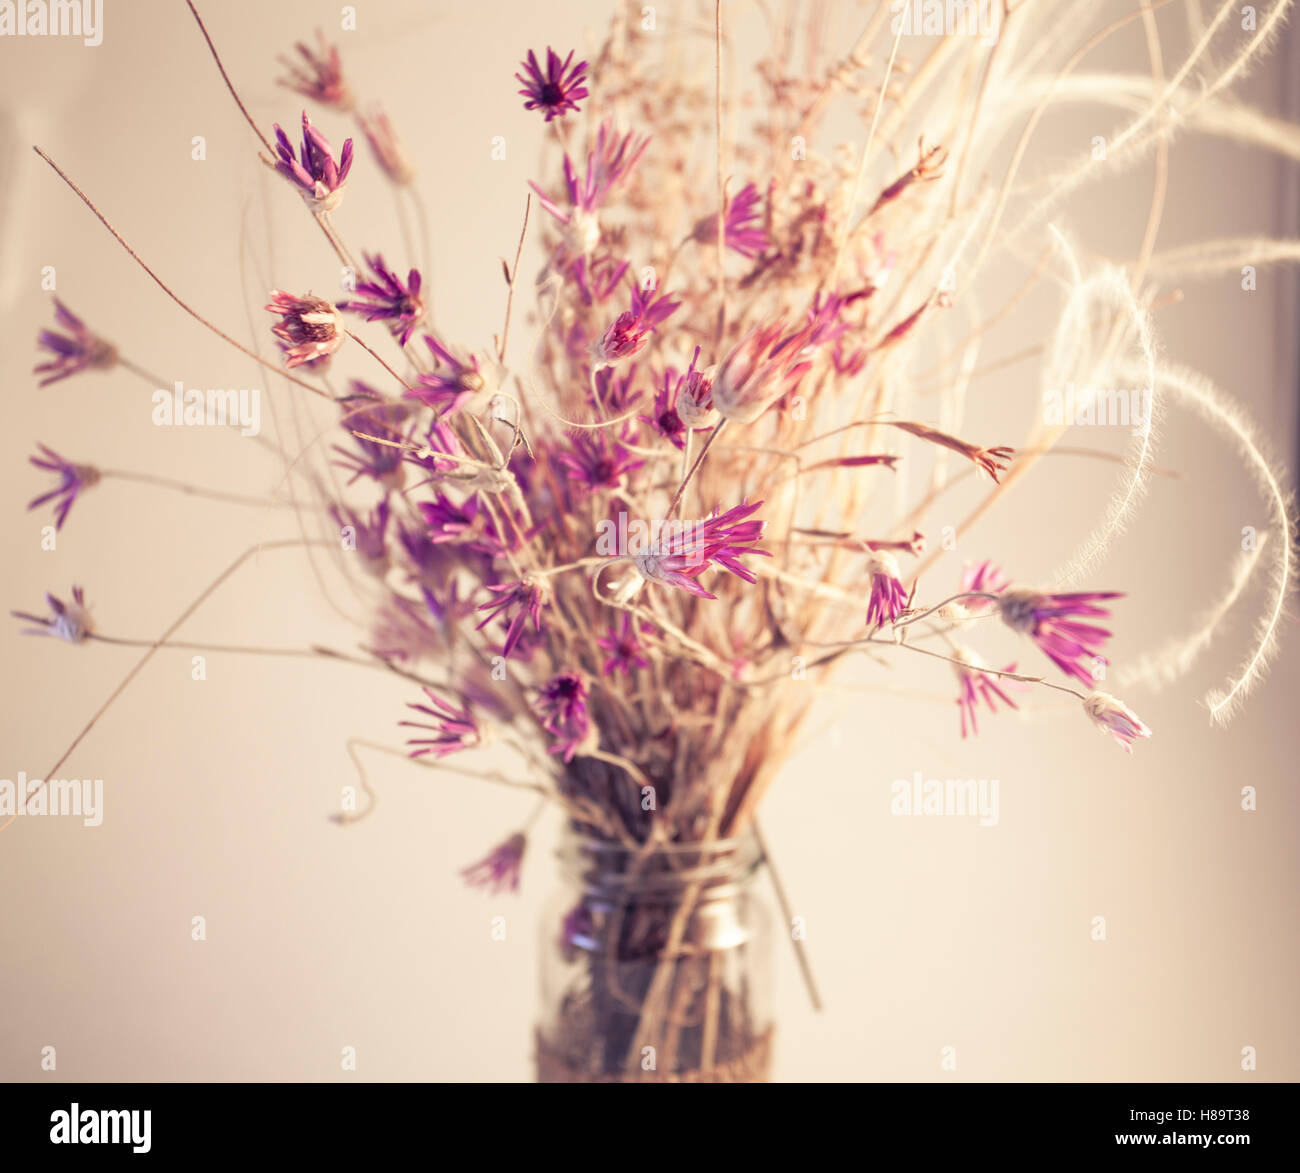 Viola bouquet di fiori in fatto a mano vaso isolato su bianco. Cartolina dettagli decorativi. Tonica con un vecchio stile morbido colori seppia. Foto Stock